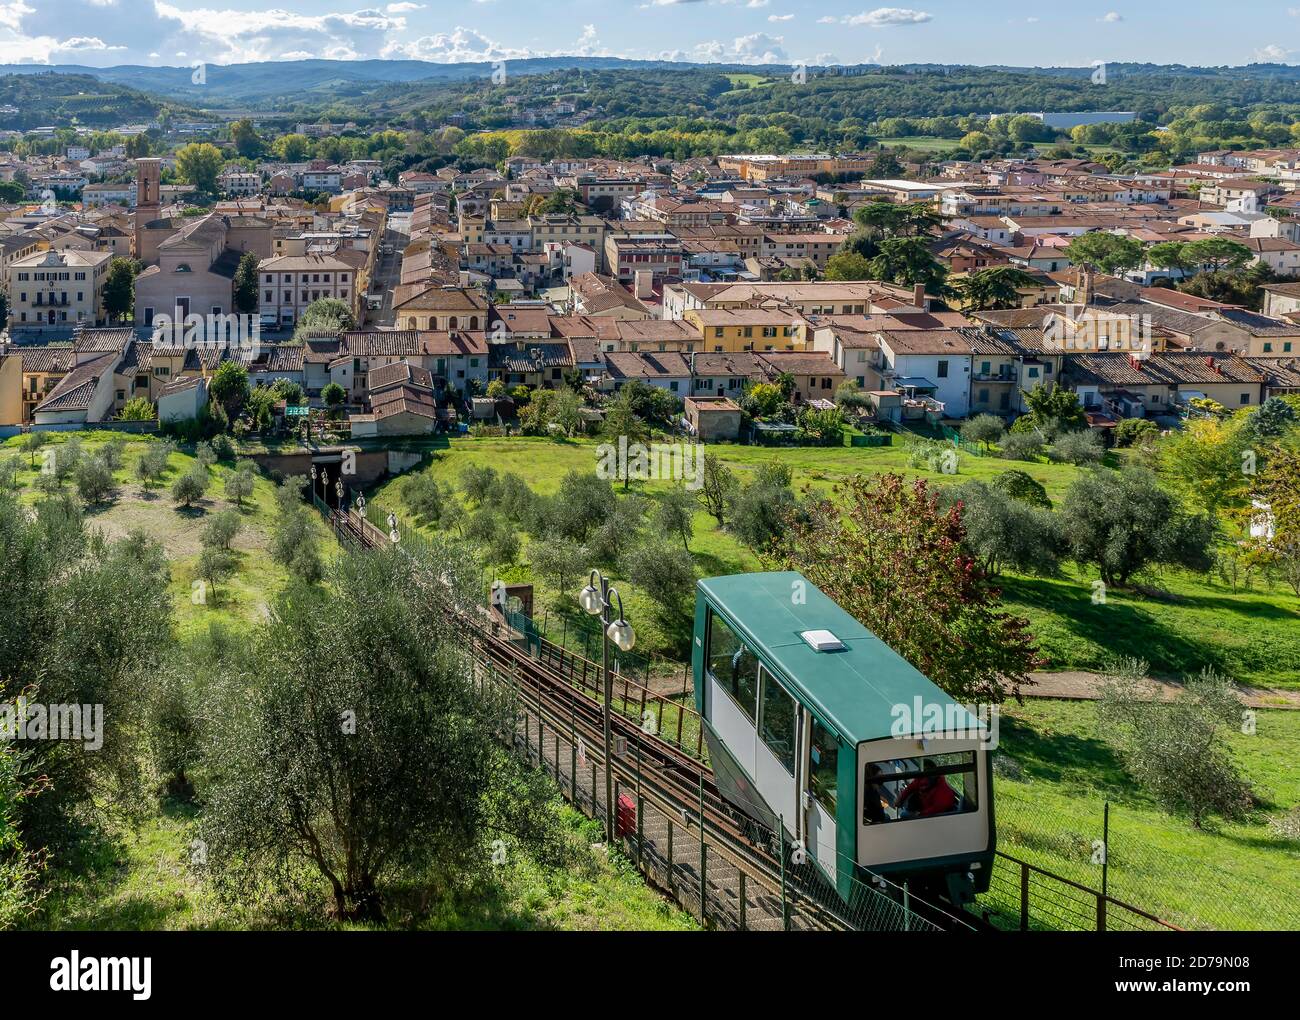 El funicular que conecta la parte inferior y superior del pueblo de Certaldo en la provincia de Florencia, Toscana, Italia Foto de stock